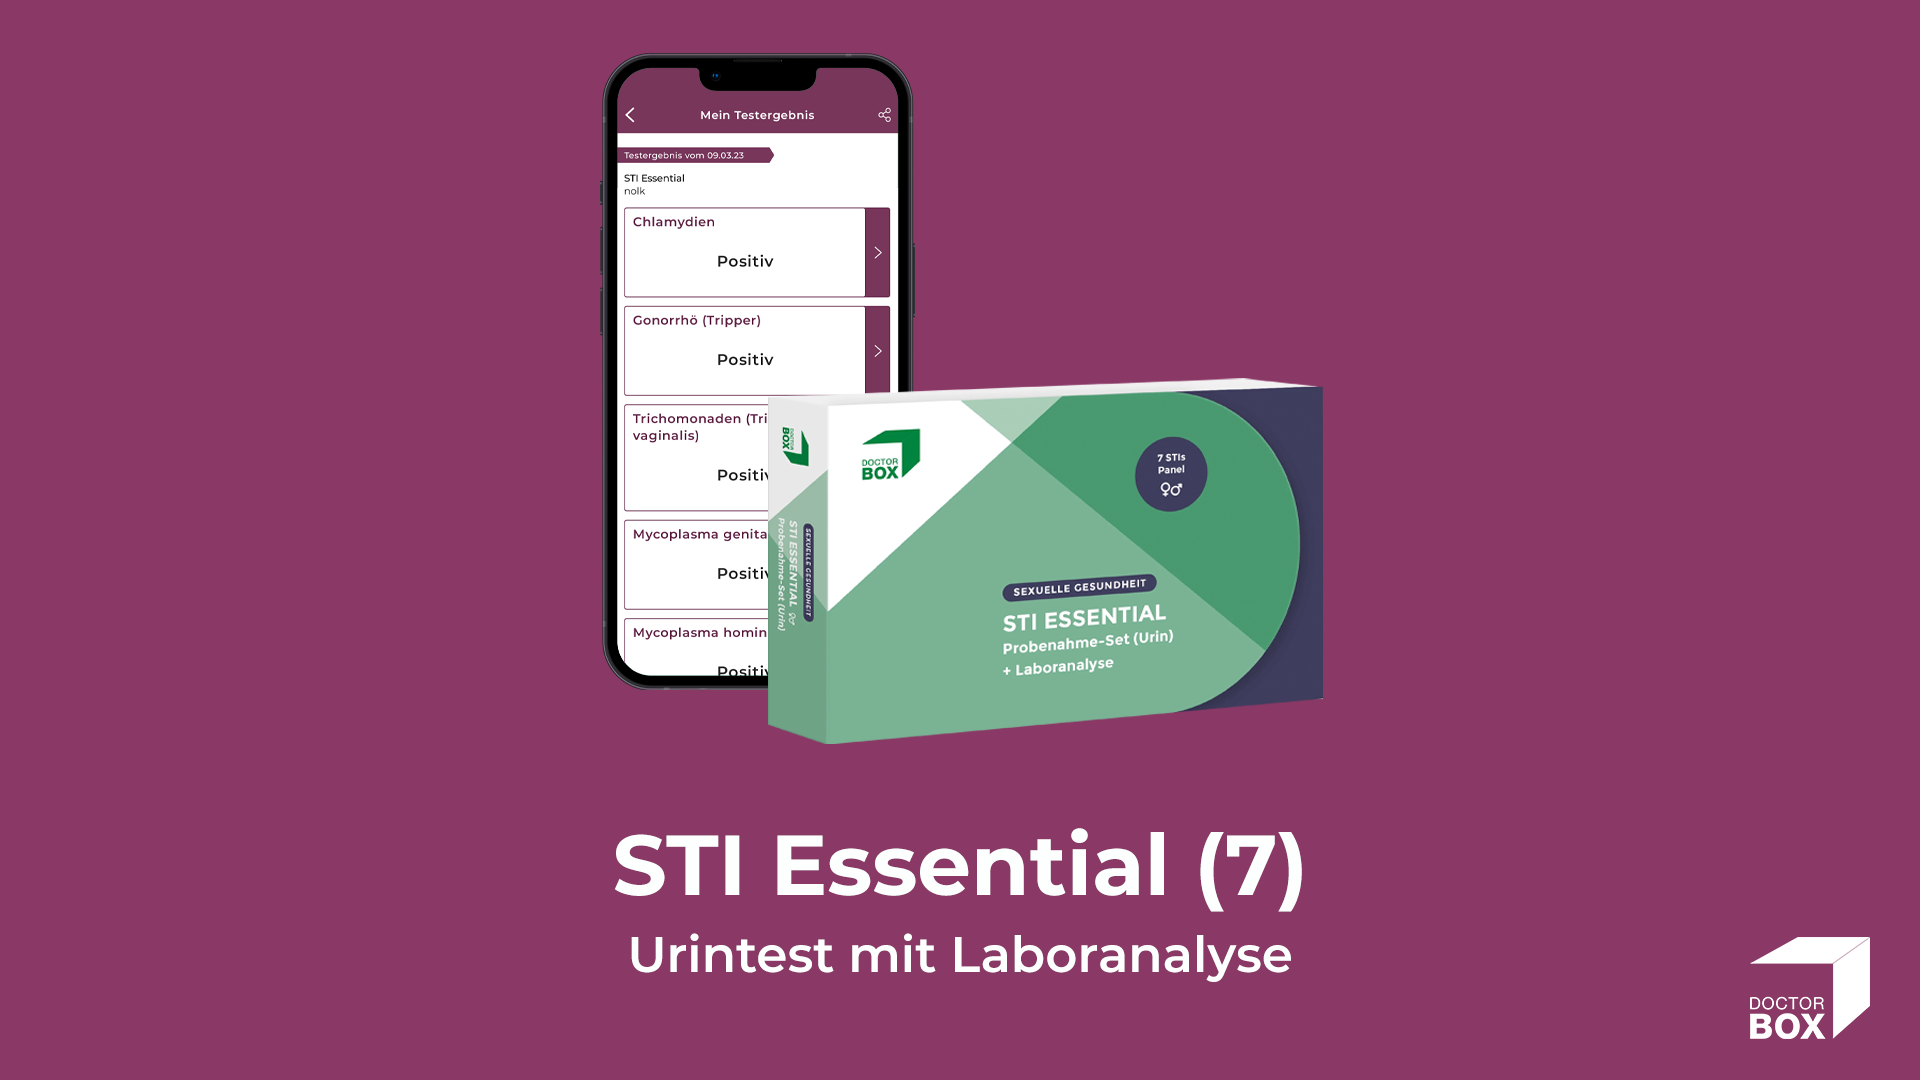 STI Essential Probenahme-Set mit Ergebnisbericht in der DoctorBox App